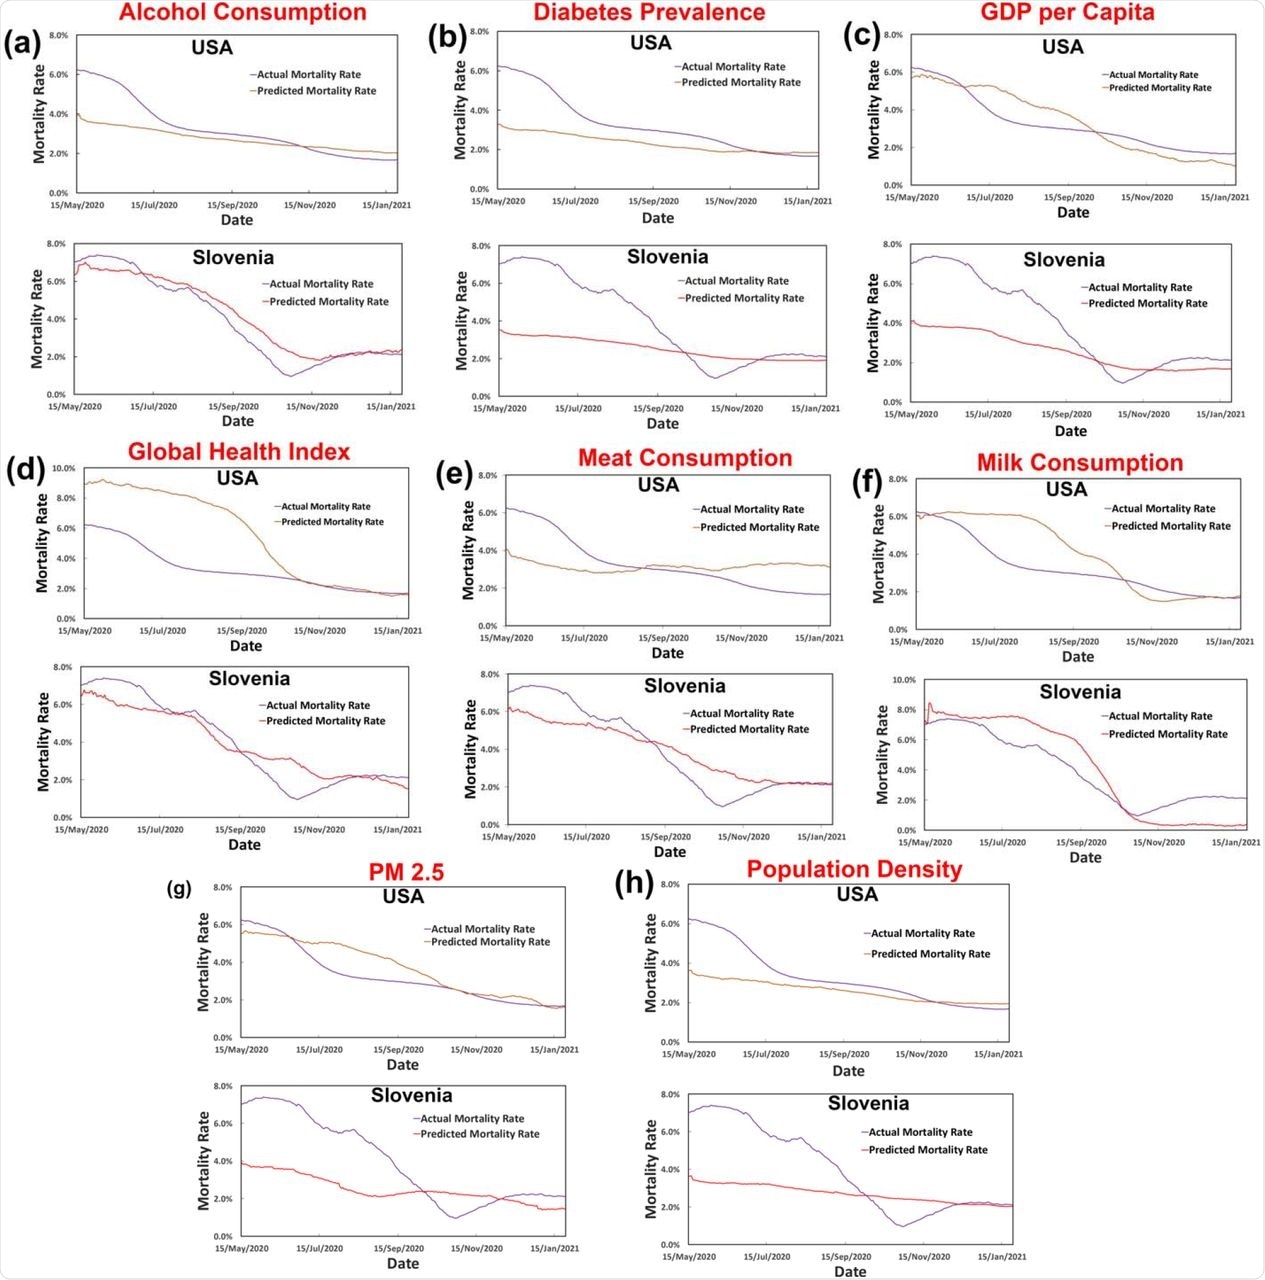 Se muestra la predicción de la tasa de mortalidad relacionada con COVID-19 utilizando un solo factor para EE. UU. y Eslovenia, donde los factores son: (a) consumo de alcohol, (b) prevalencia de diabetes, (c) PIB per cápita, (d) índice de salud global , (e) consumo de carne, (f) consumo de leche, (g) PM 2.5 y (h) densidad de población.  Ninguno de los factores individualmente puede describir la tendencia de manera integral.